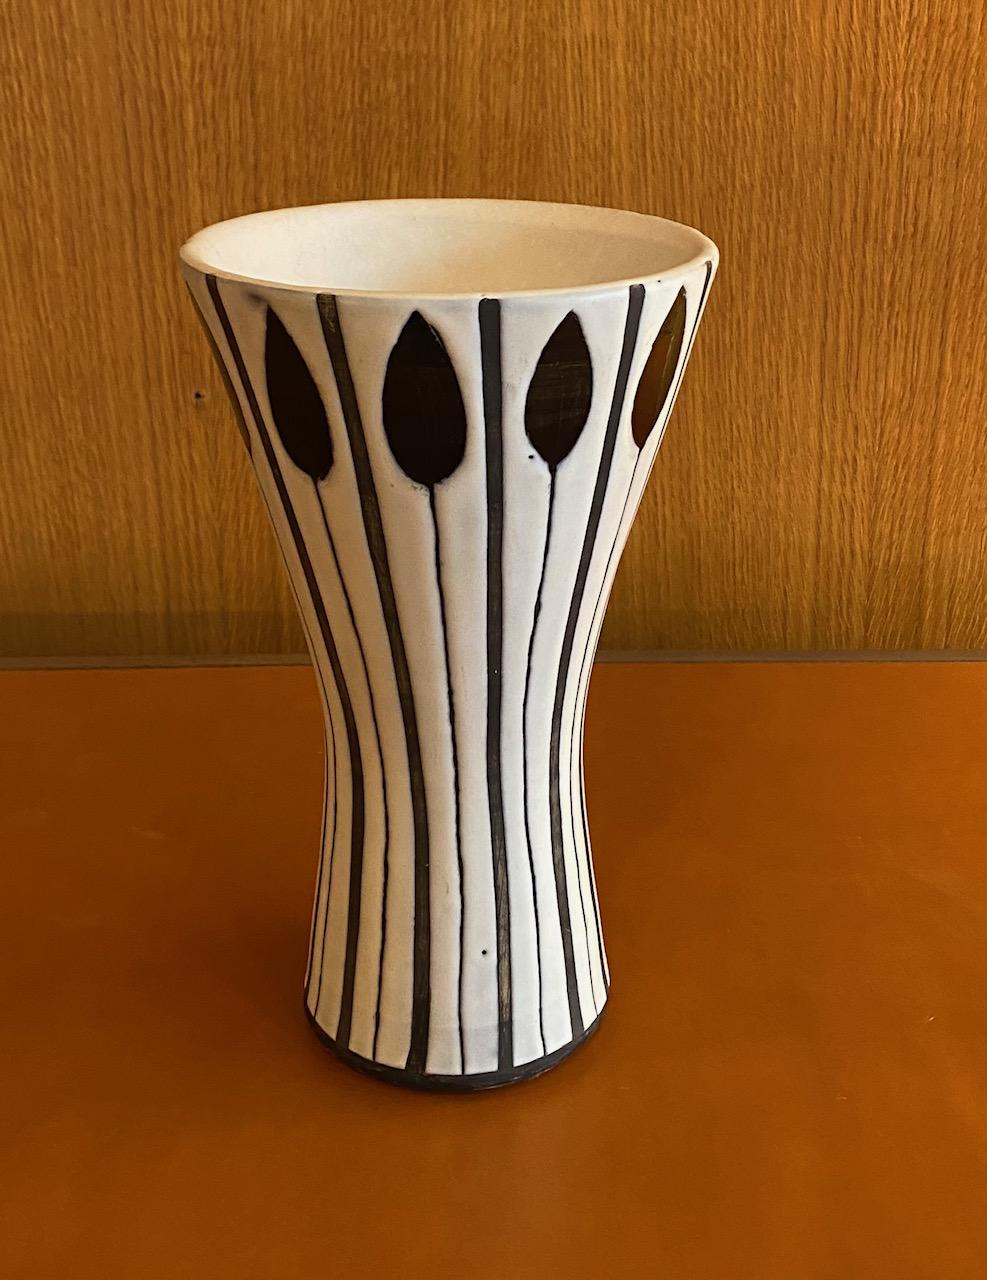 Ceramic vase by Roger Capron, France, 1960s
Signed 